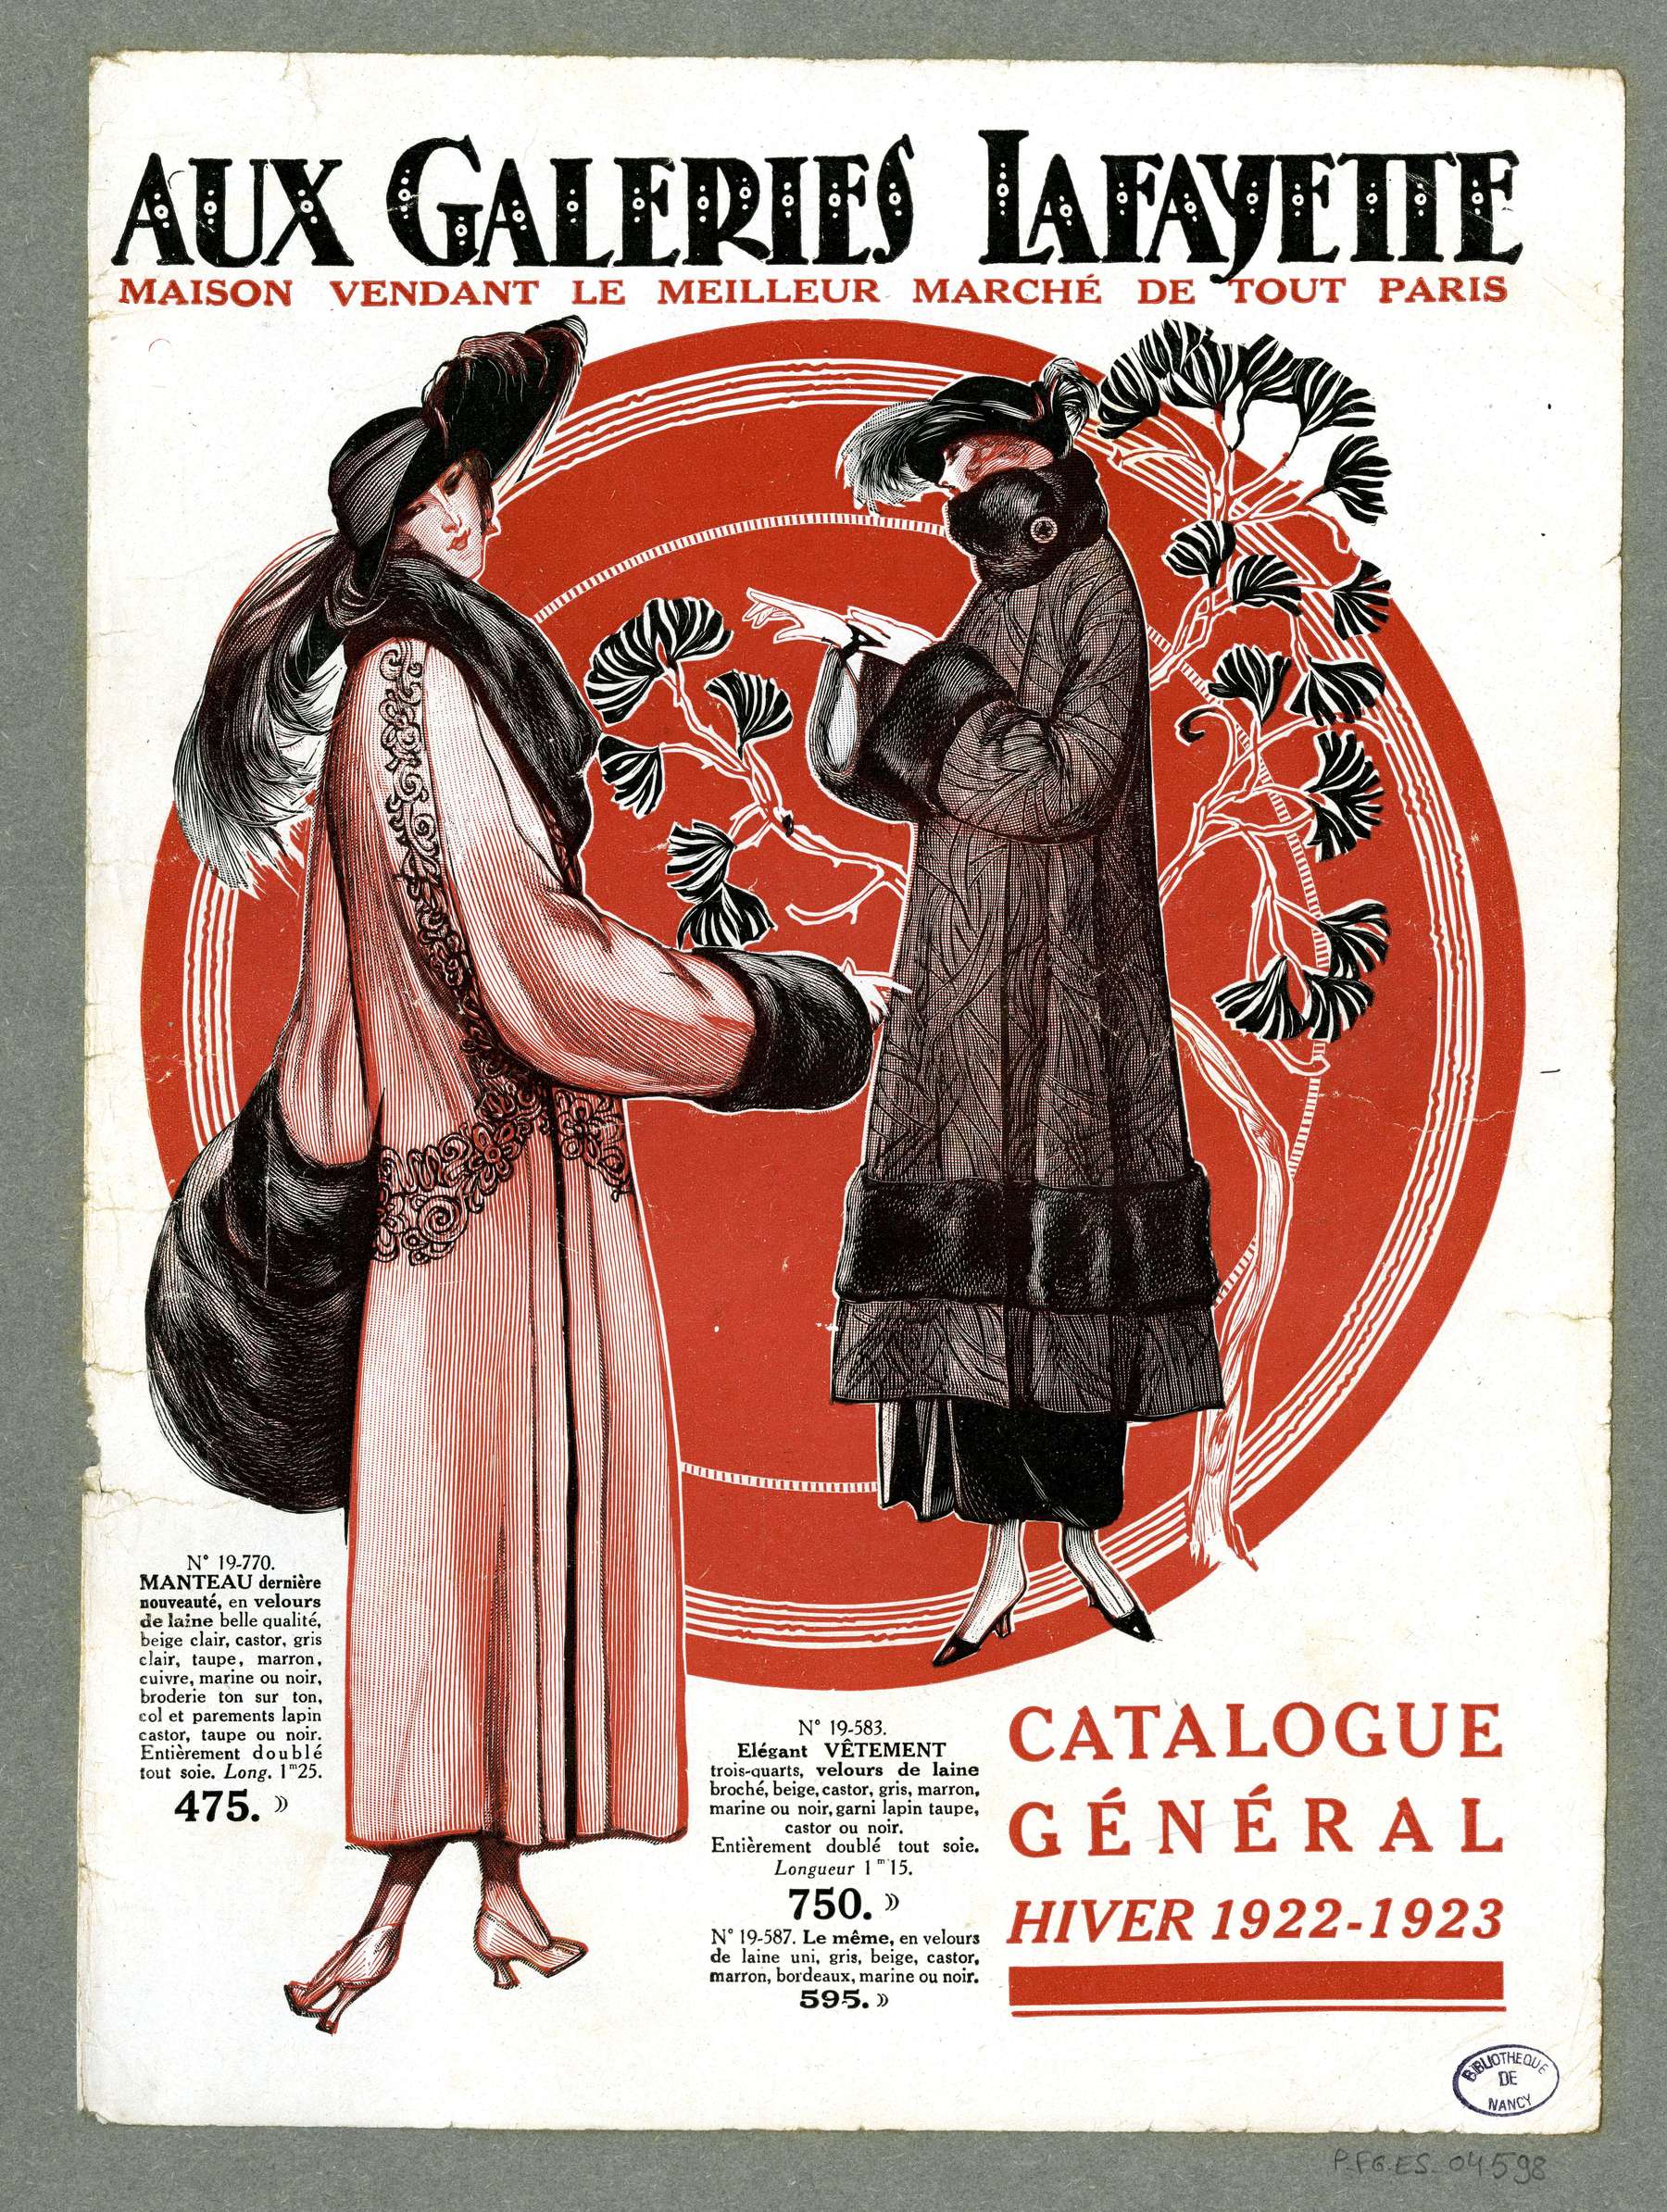 Contenu du Catalogue général, hiver 1922-1923